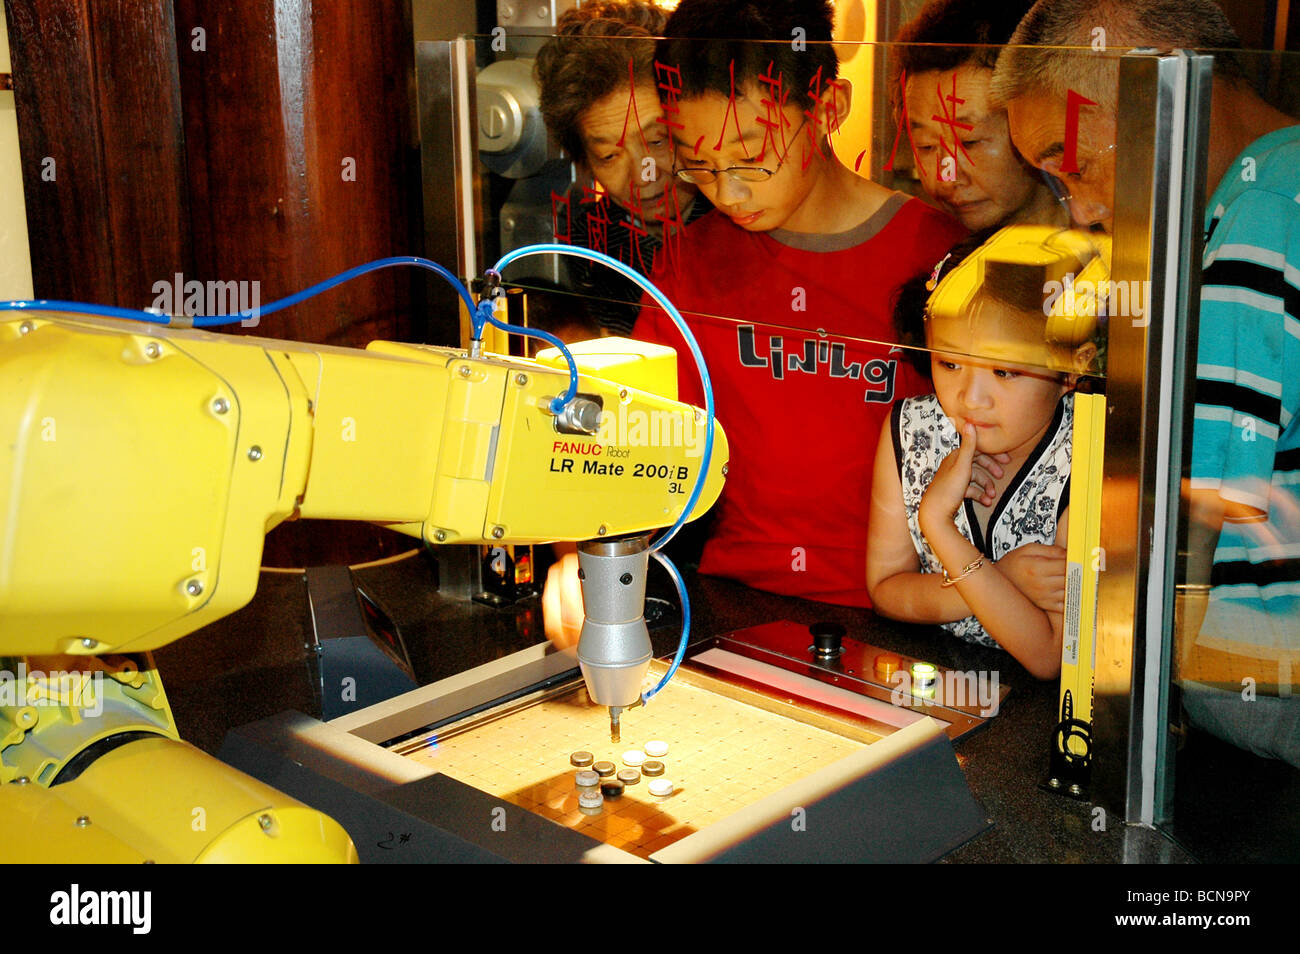 Menschen zu sehen, eine Roboter Manöver, Shanghai, China Stockfoto